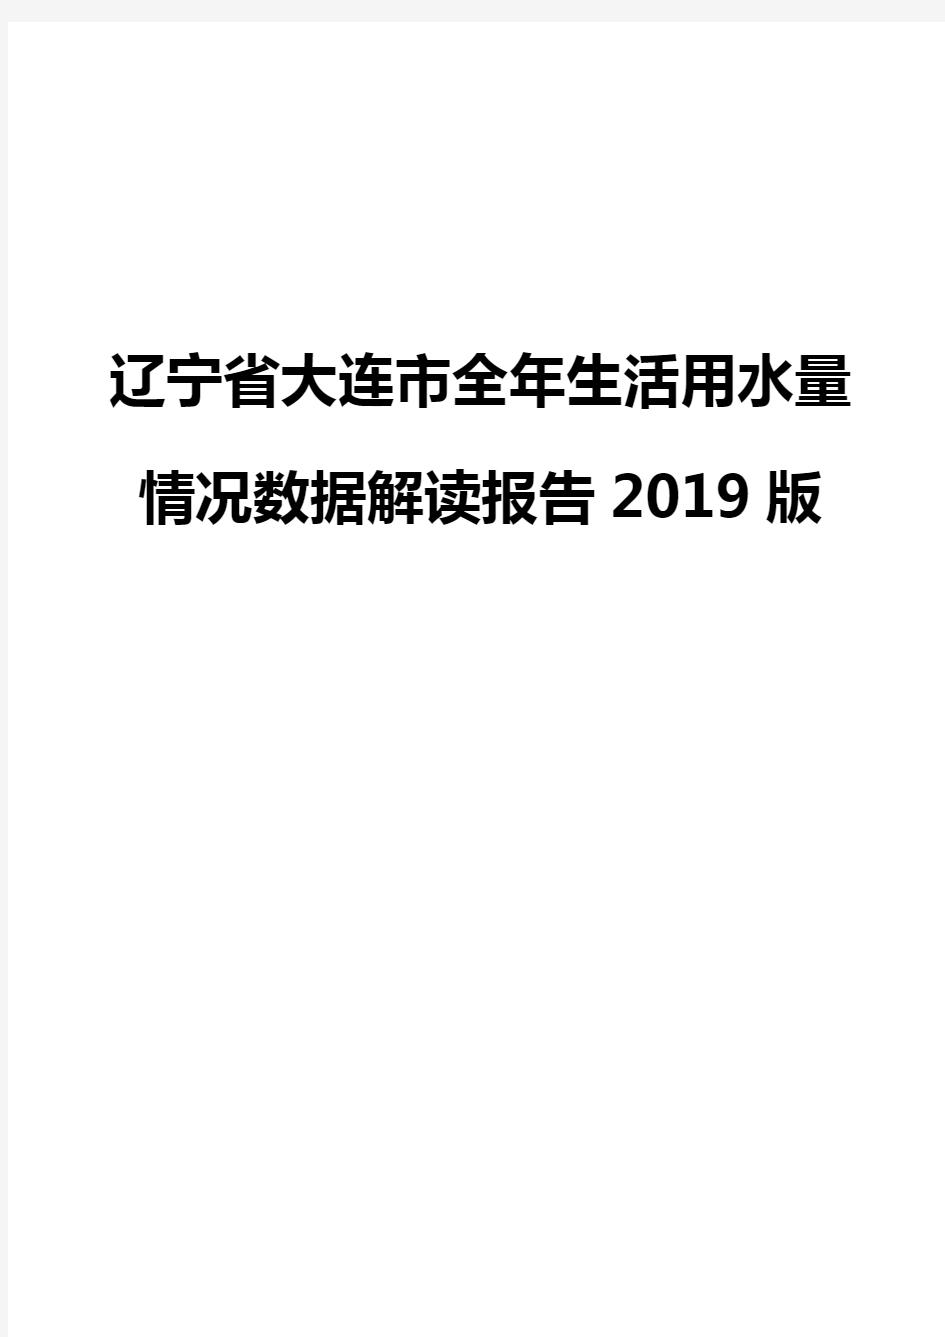 辽宁省大连市全年生活用水量情况数据解读报告2019版